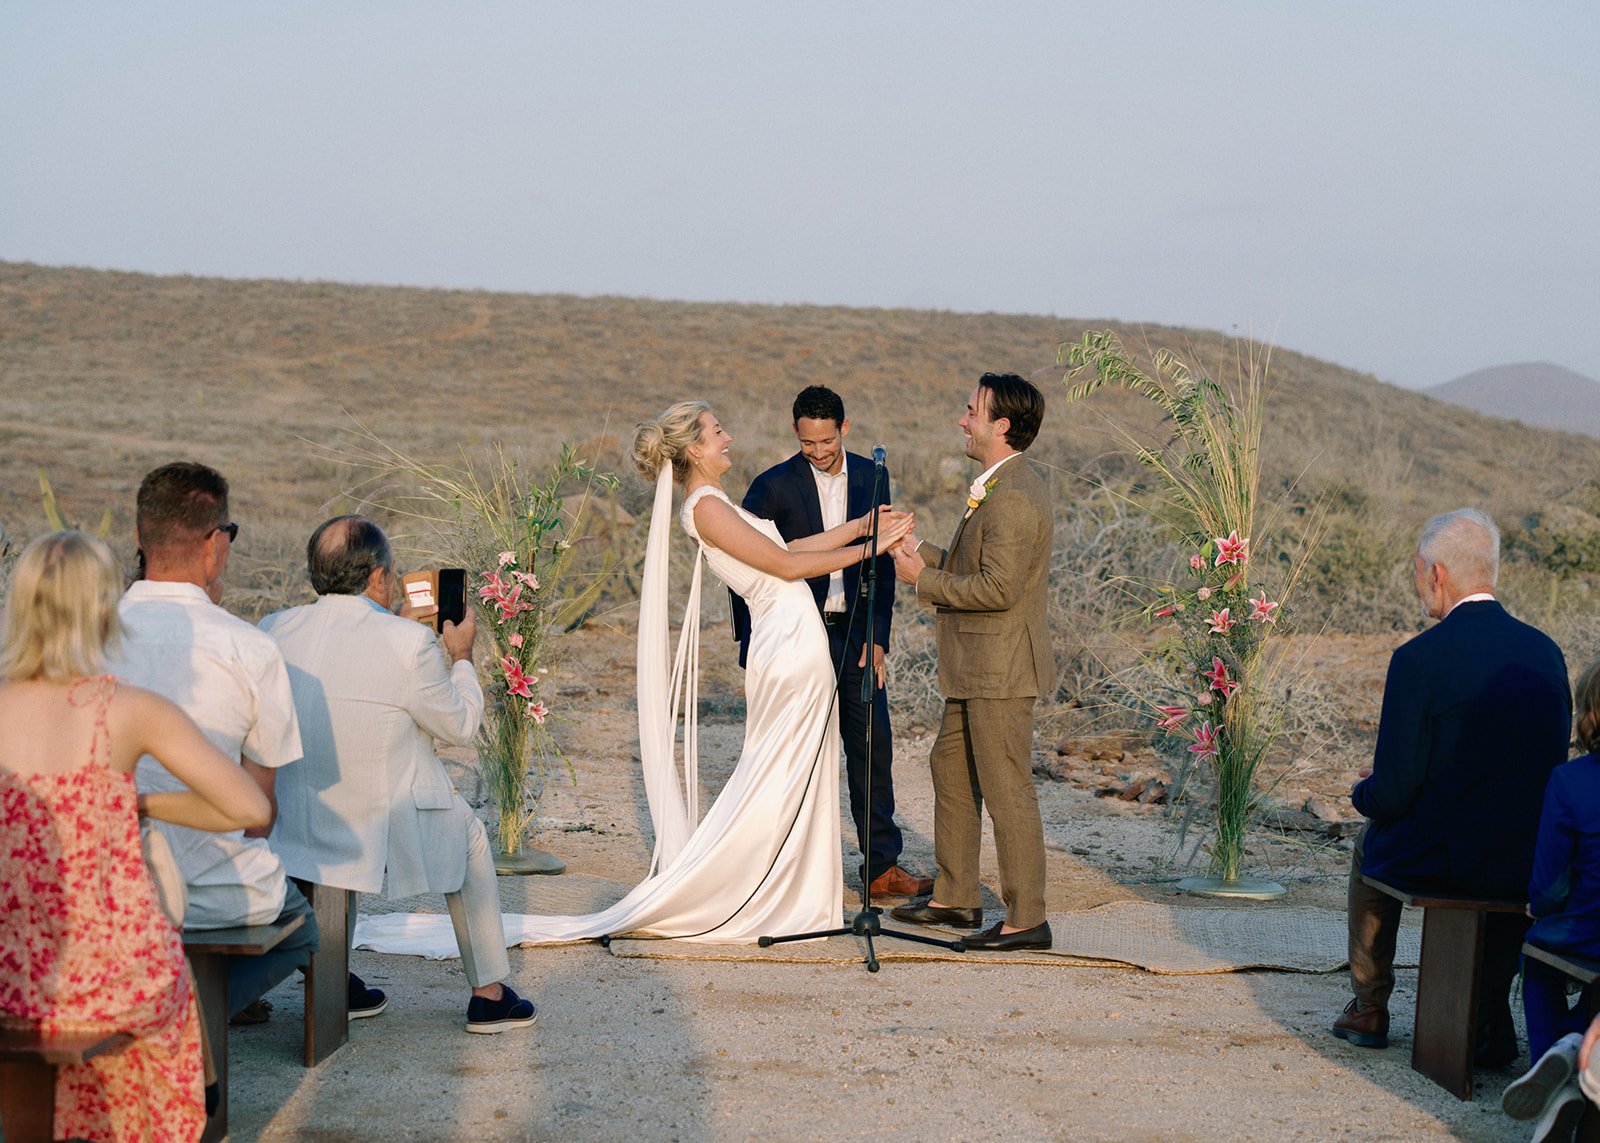 Best-Todos-Santos-Wedding-Photographer-Baja-El Mirador-La Bohemia-35mm-Film-Austin-Mexico-134.jpg